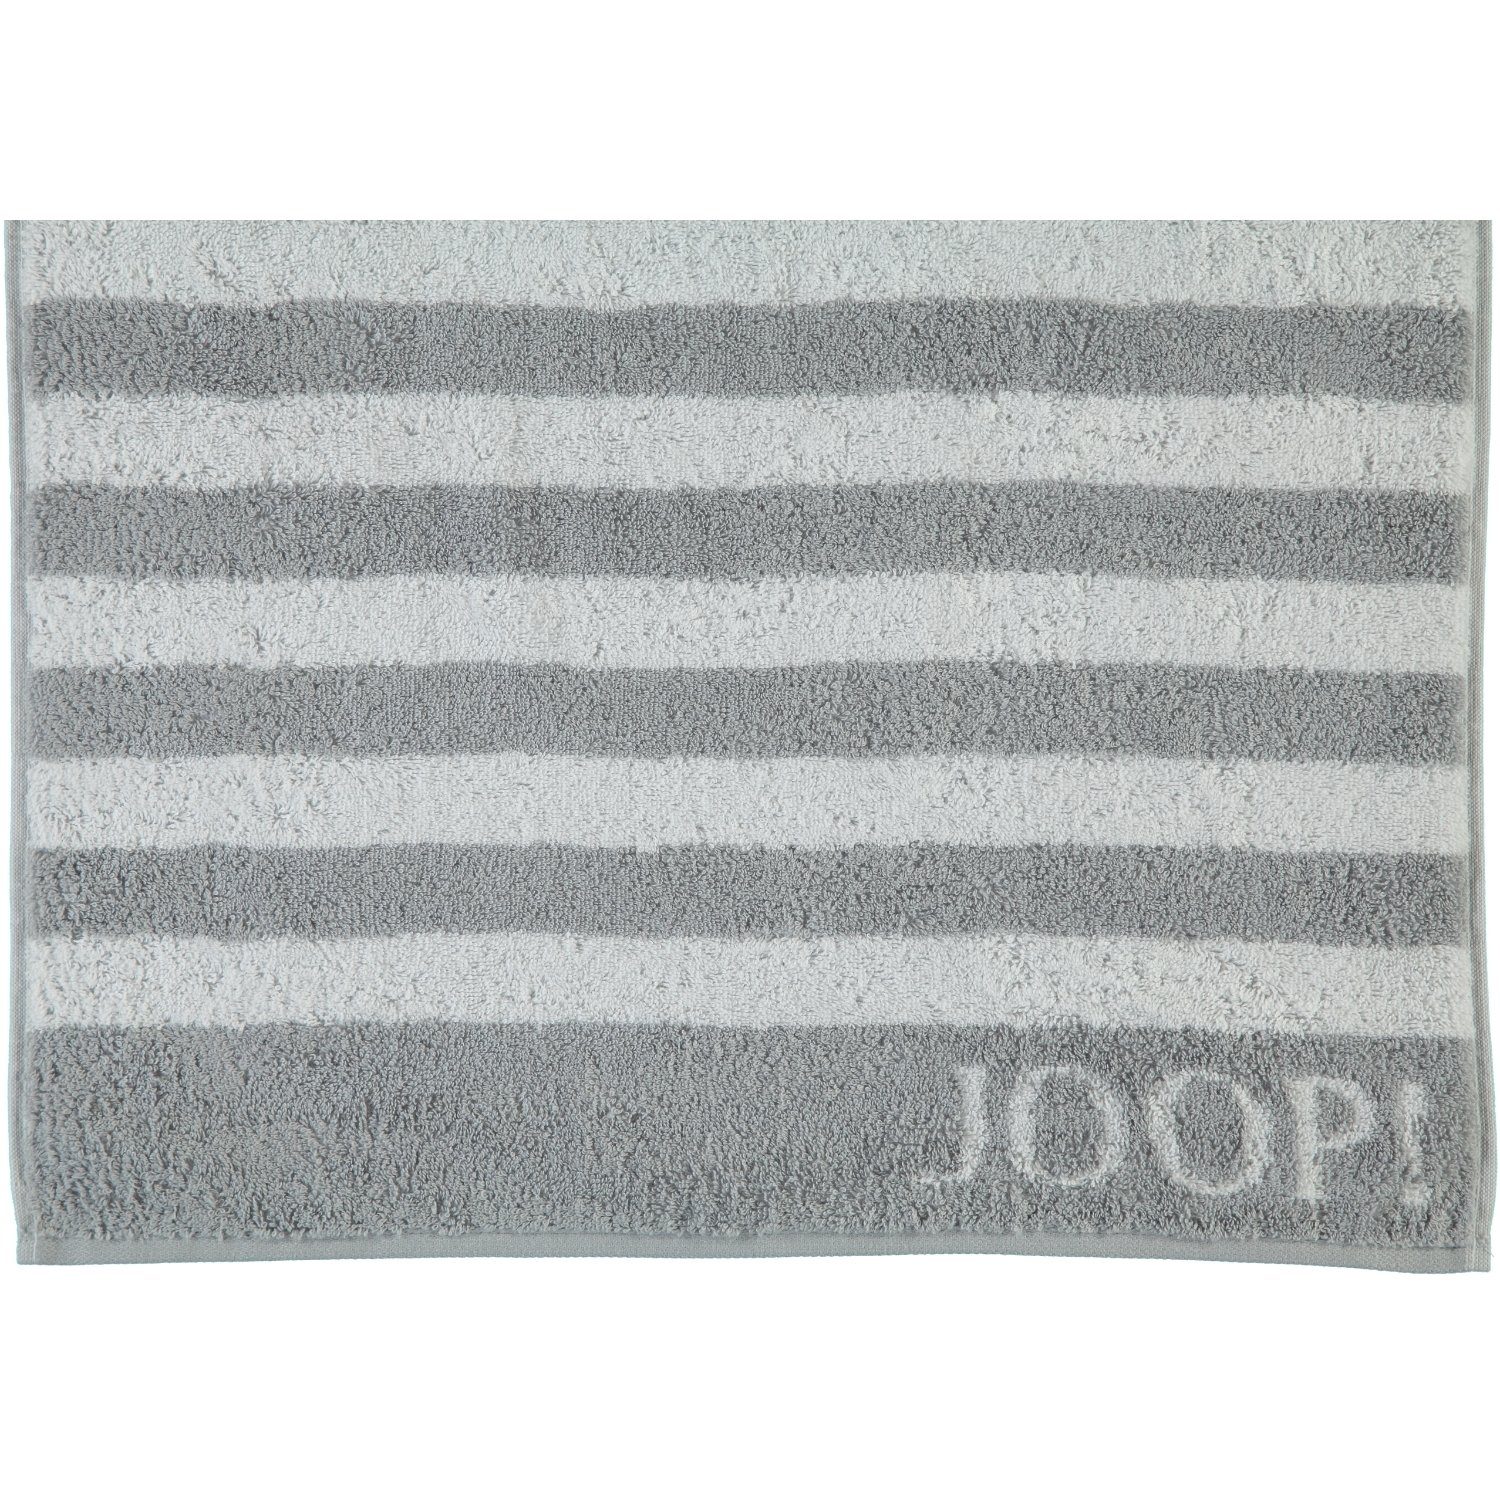 Joop! Handtücher Classic Baumwolle 100% Silber (76) 1610, Stripes